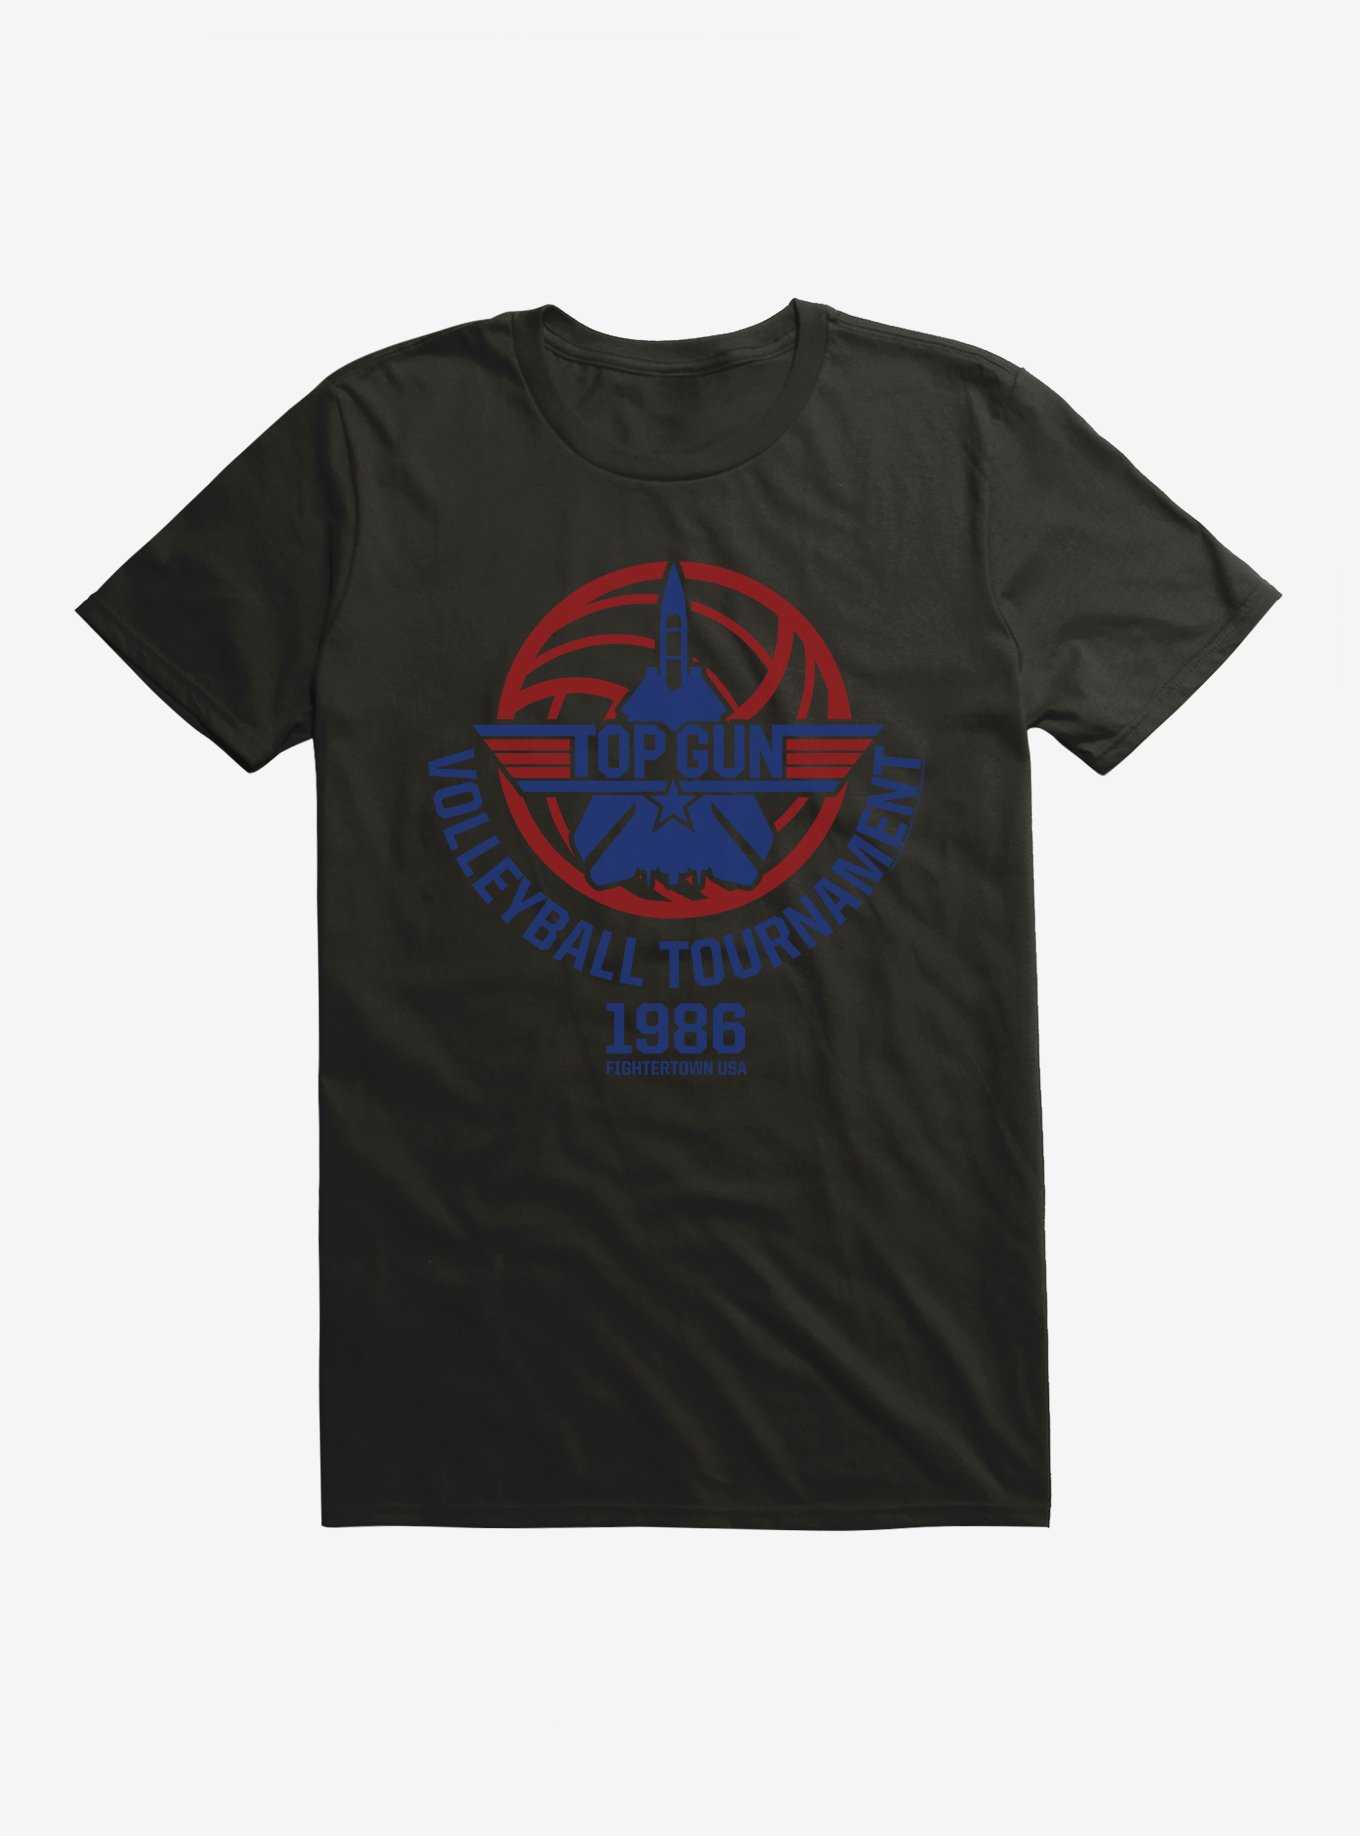 OFFICIAL Top Gun Merchandise & Shirts